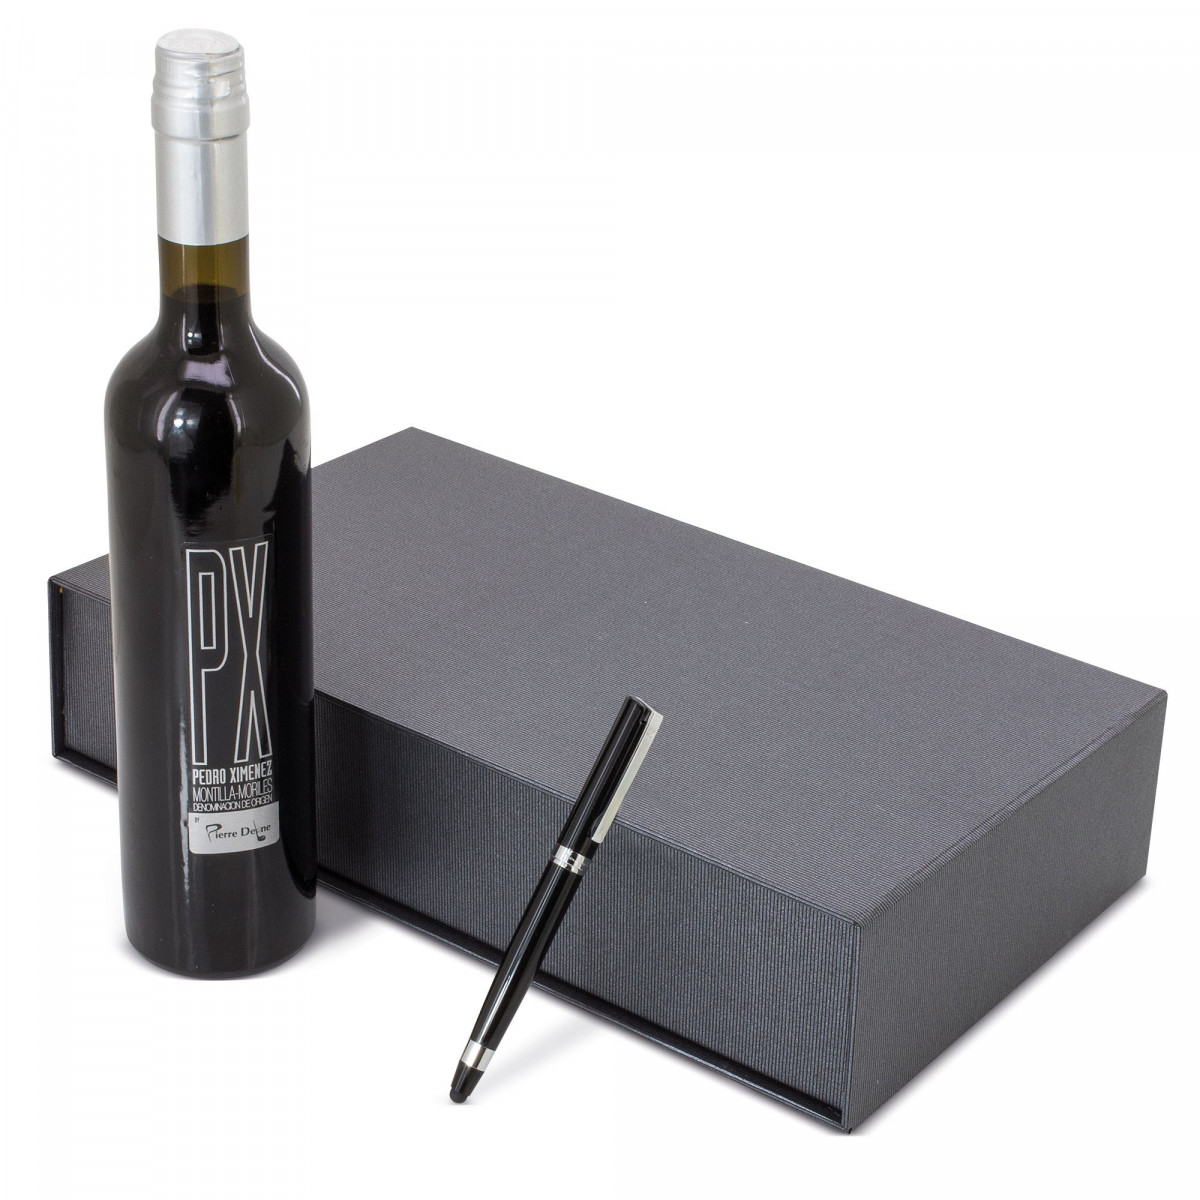 Garrafa de vinho Pedro Ximenez com caneta preta Pierre Cardin apresentada em estojo